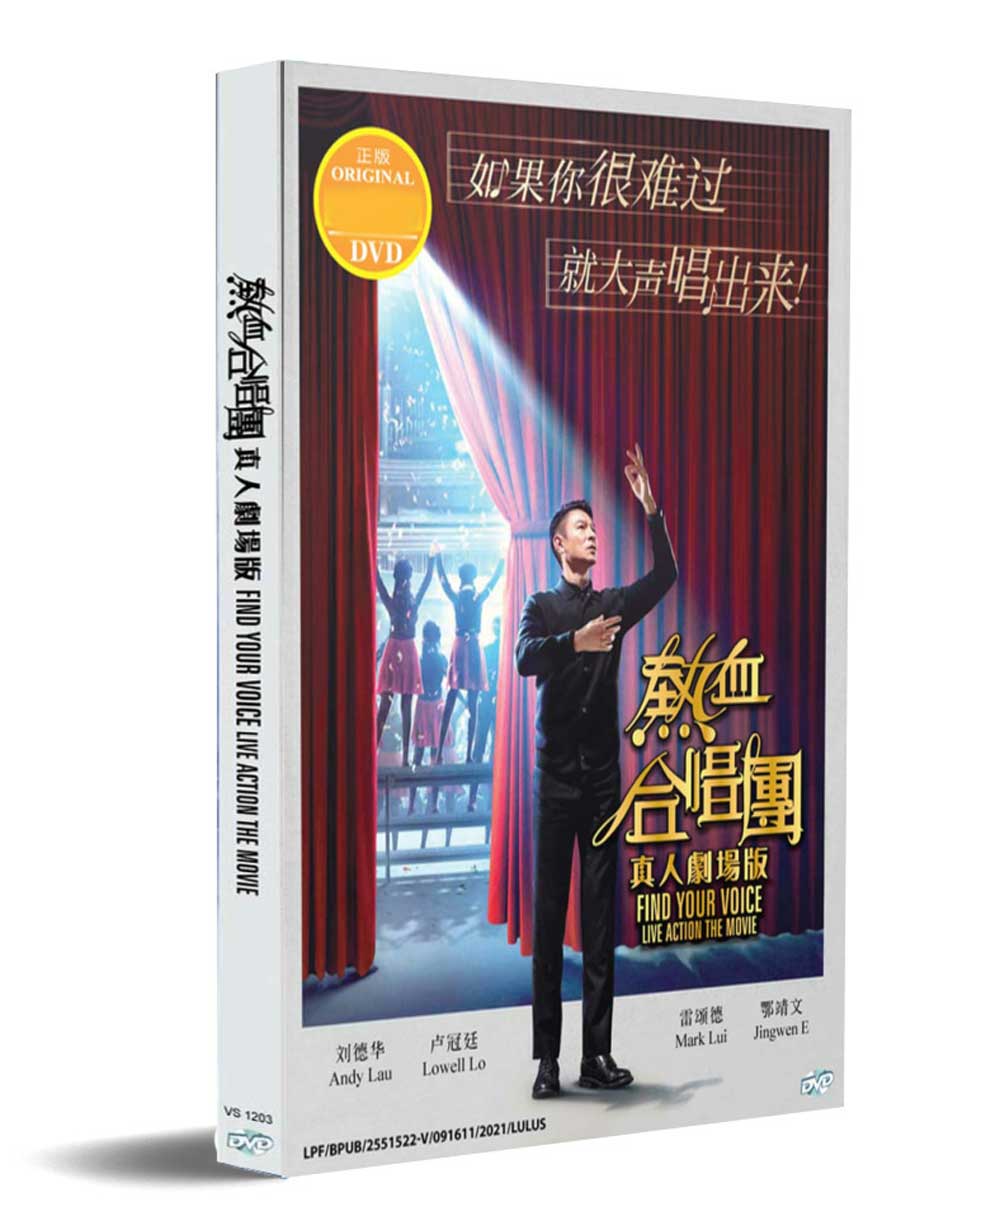 Find Your Voice (DVD) (2020) 香港映画